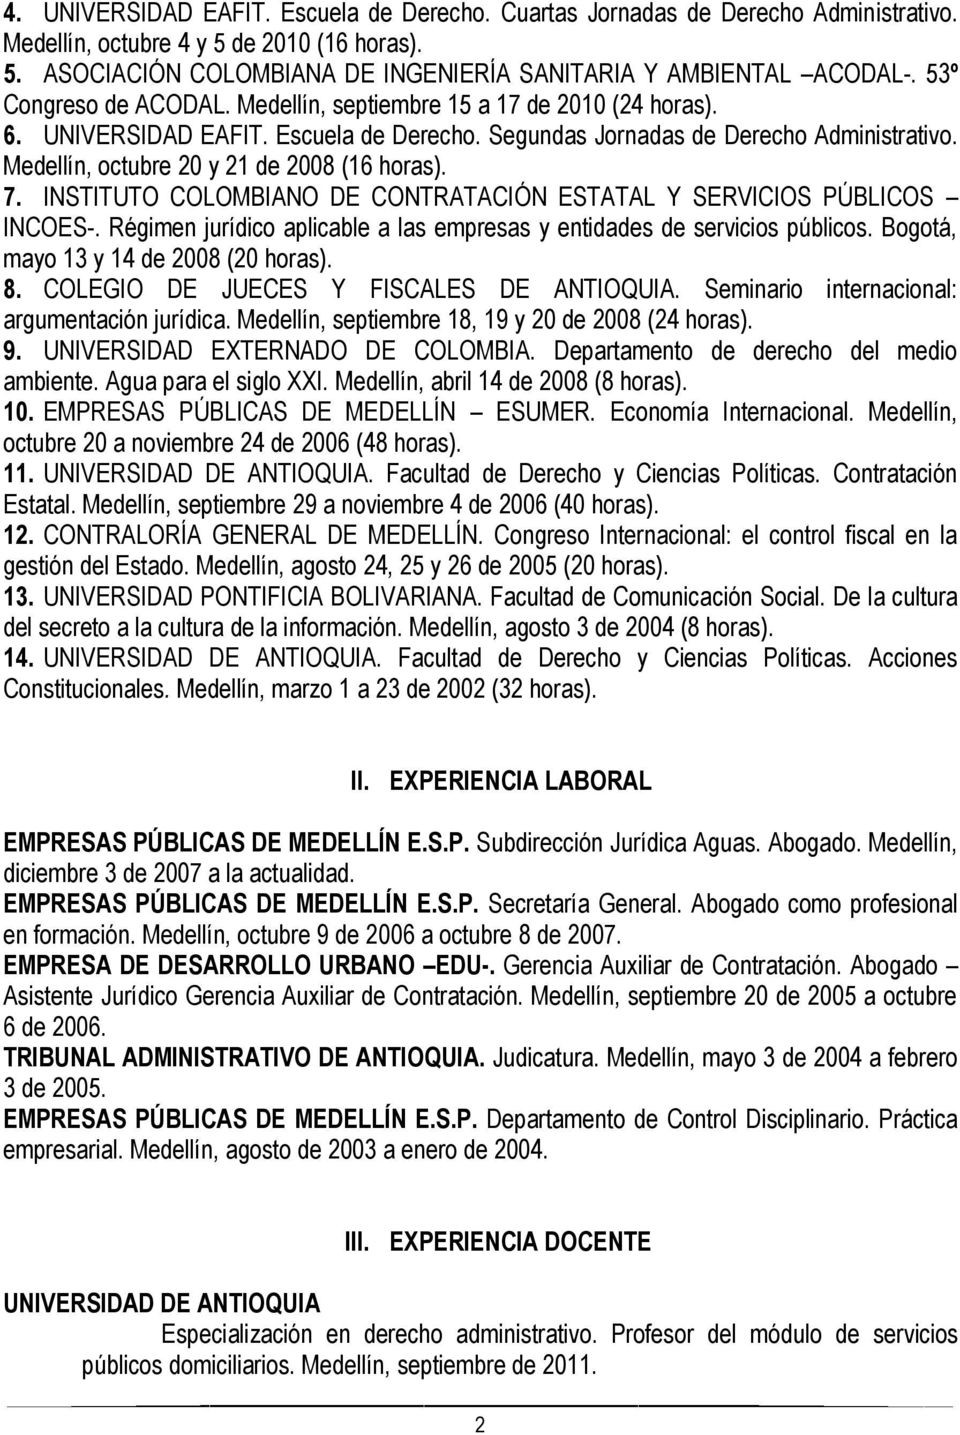 Medellín, octubre 20 y 21 de 2008 (16 horas). 7. INSTITUTO COLOMBIANO DE CONTRATACIÓN ESTATAL Y SERVICIOS PÚBLICOS INCOES-. Régimen jurídico aplicable a las empresas y entidades de servicios públicos.